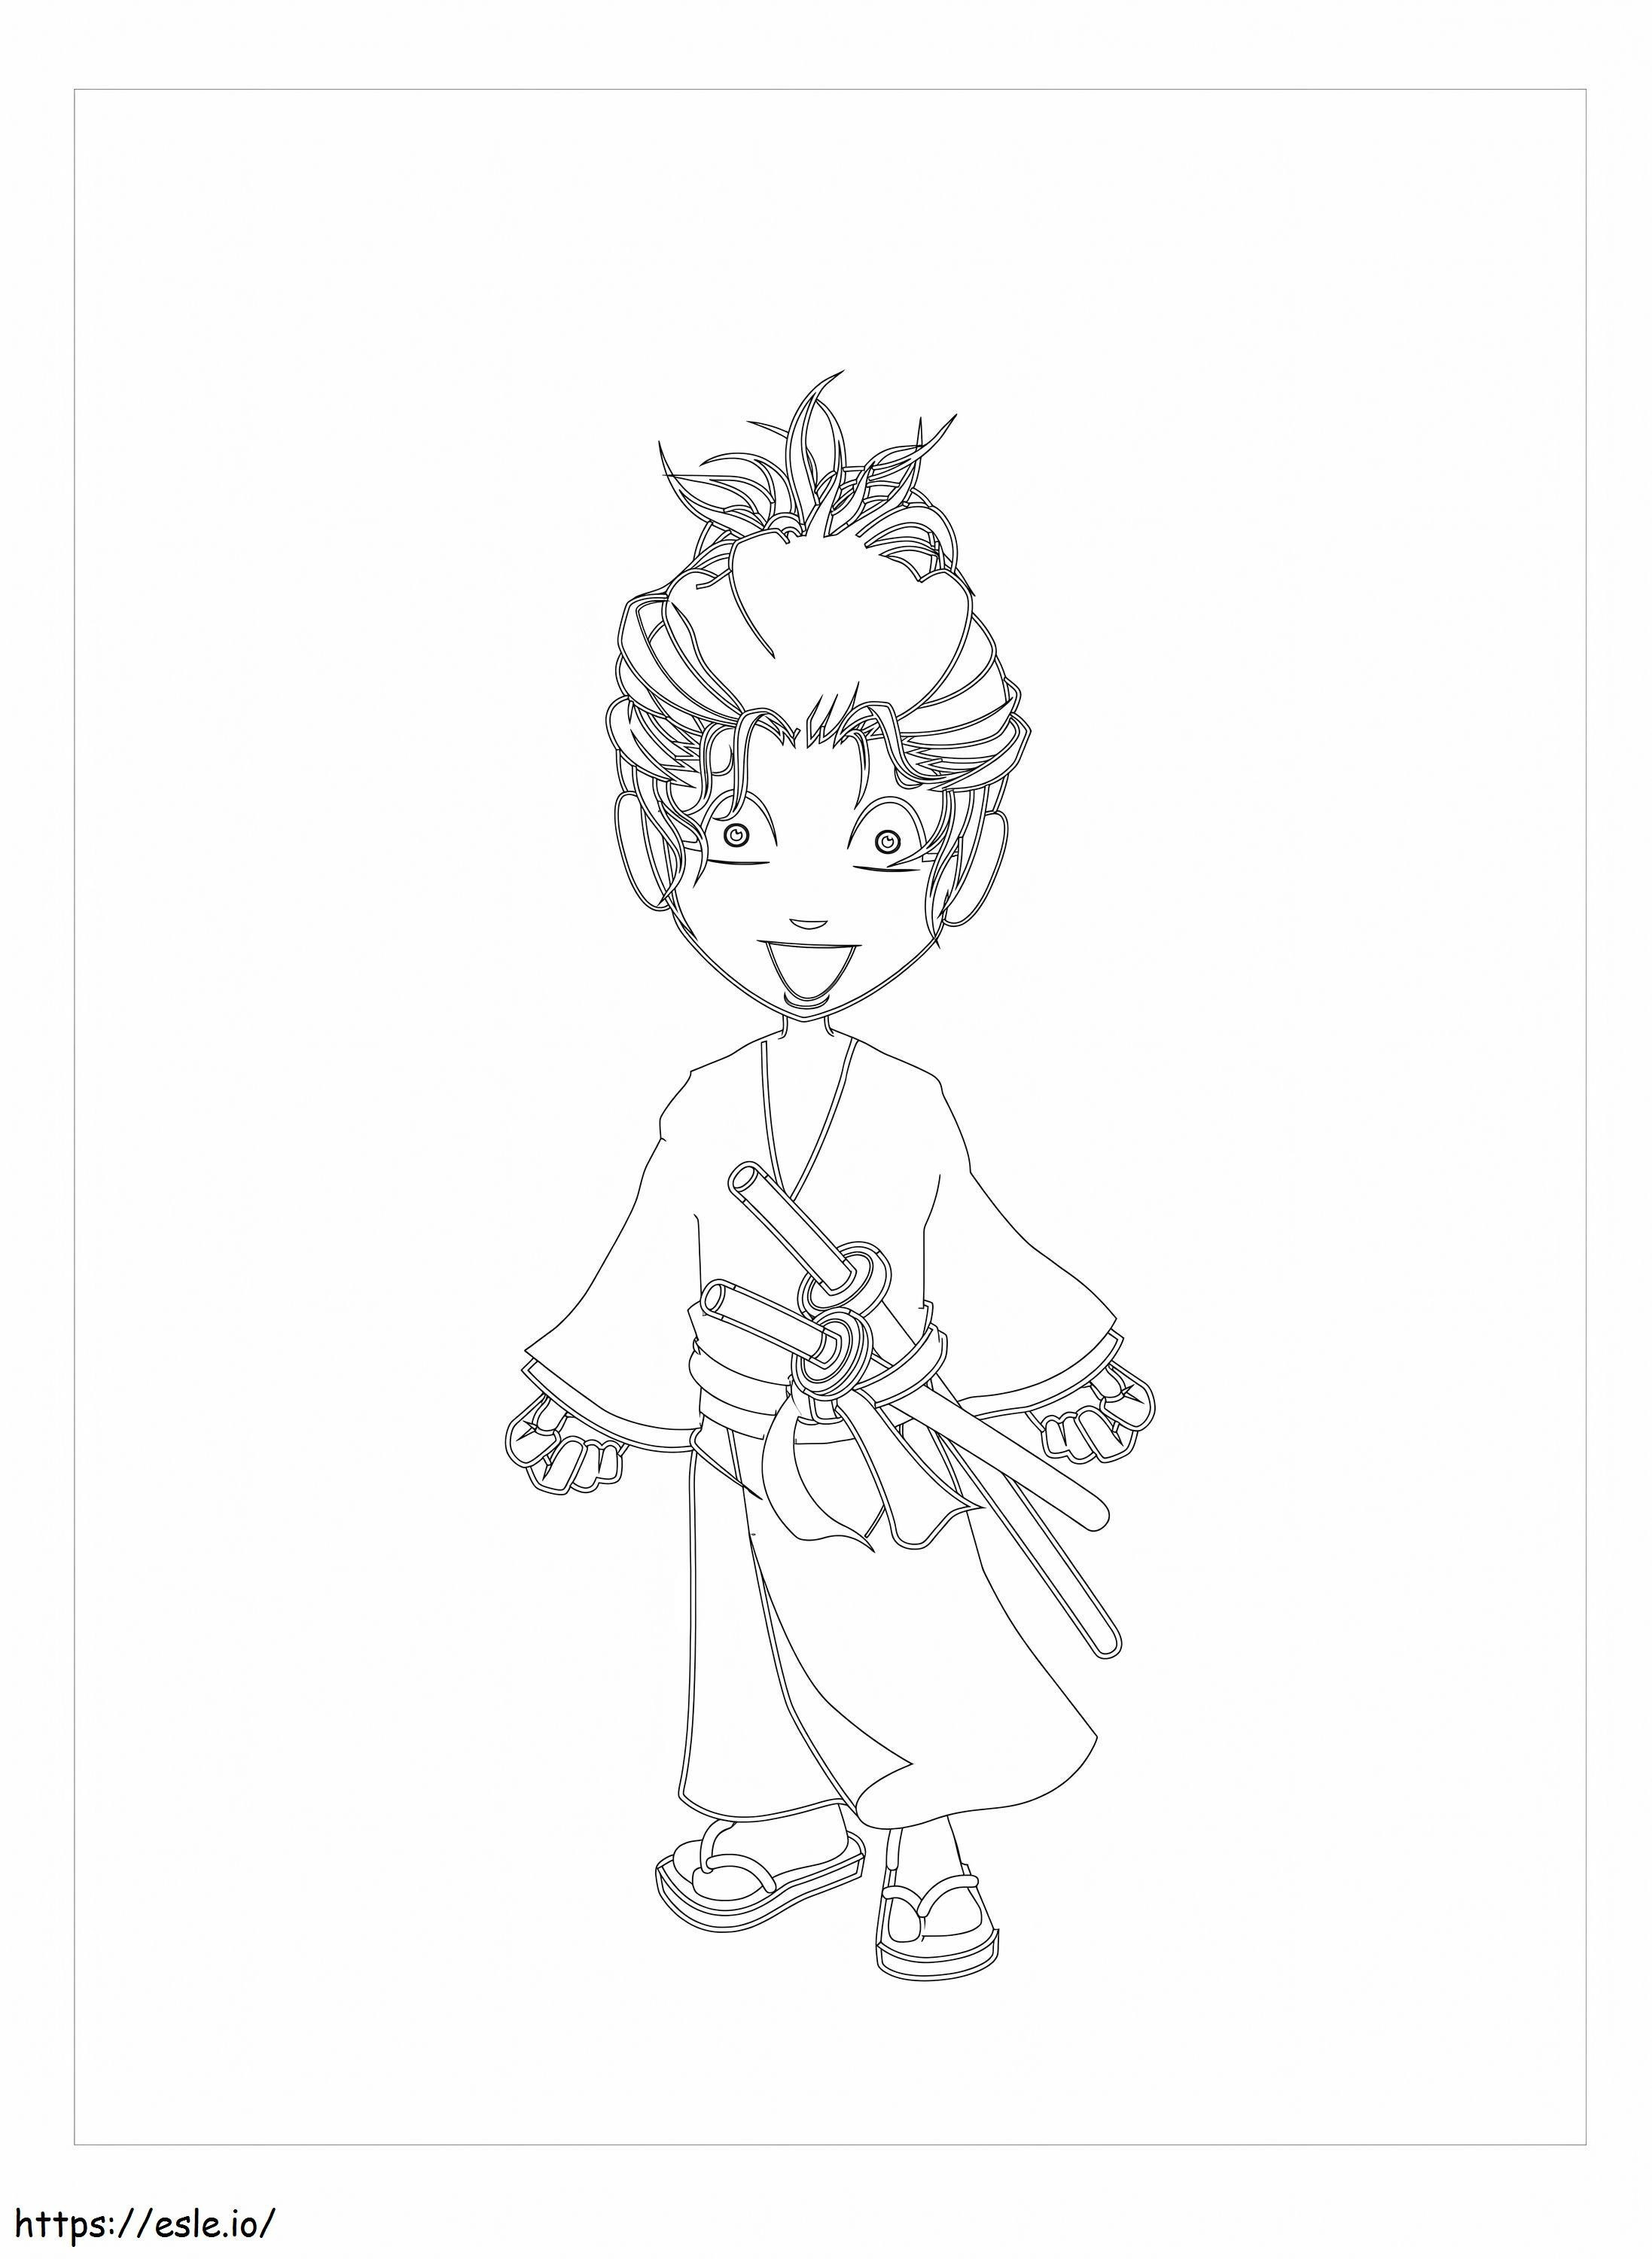 Funny Samurai coloring page